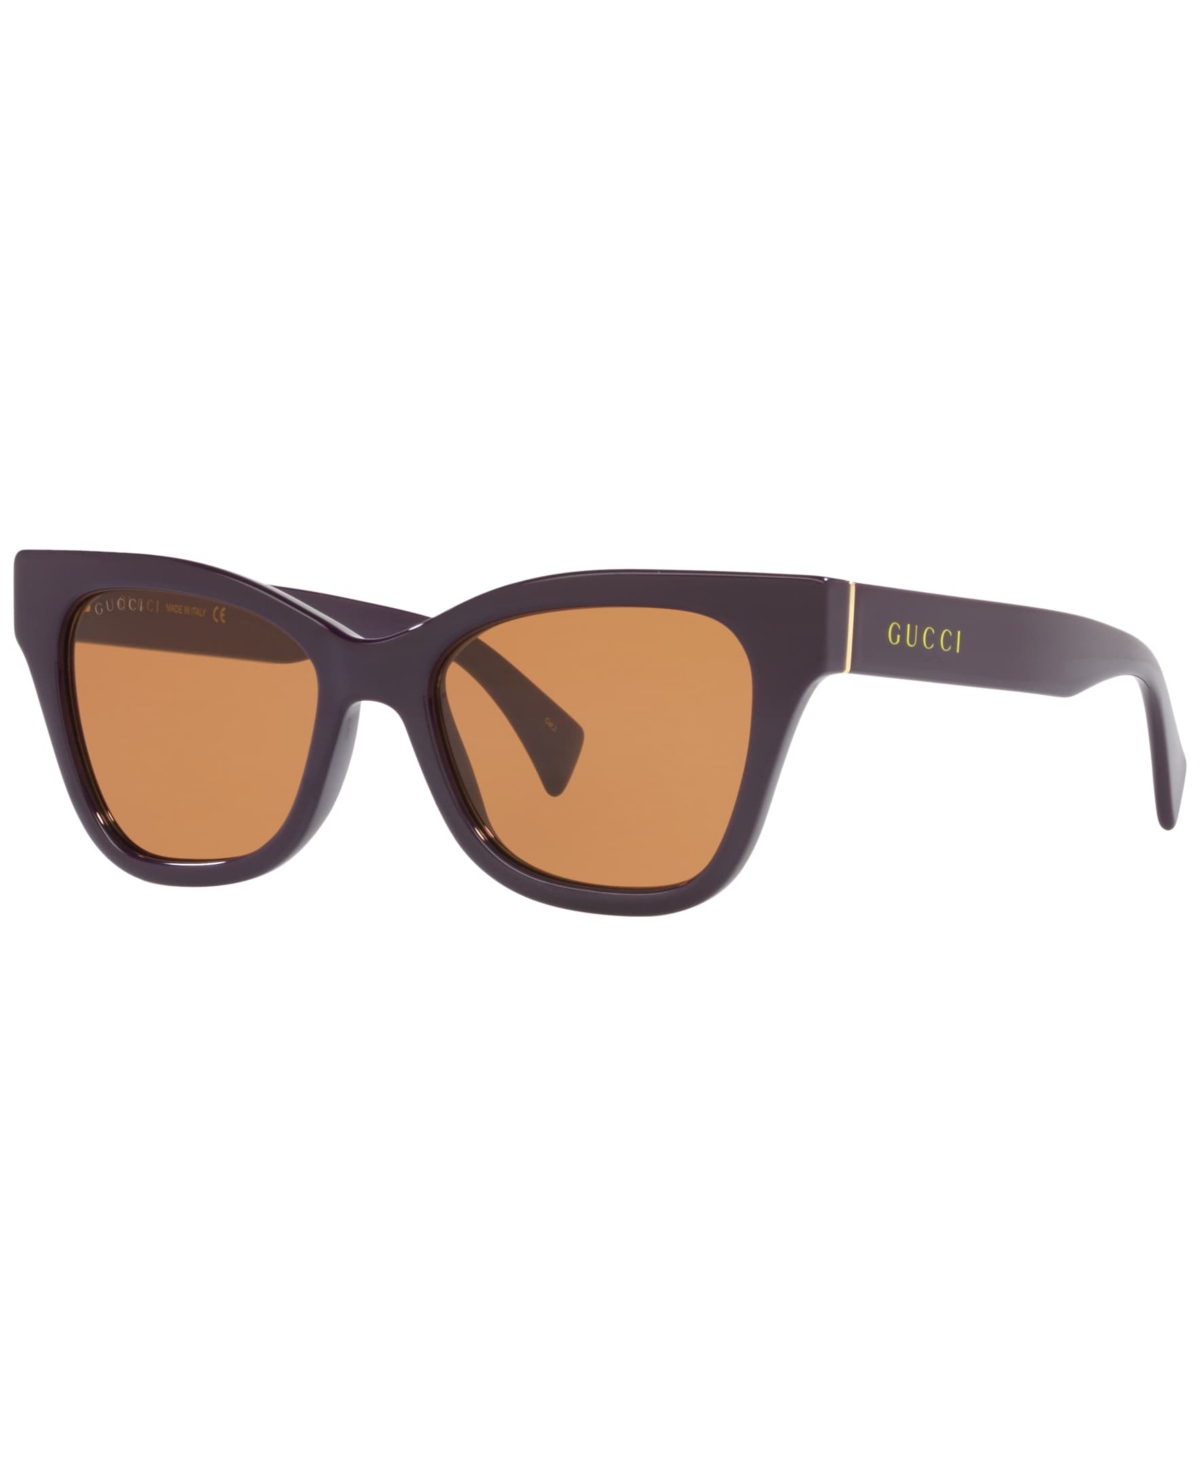 Gucci Women's Sunglasses, GC00188152-x